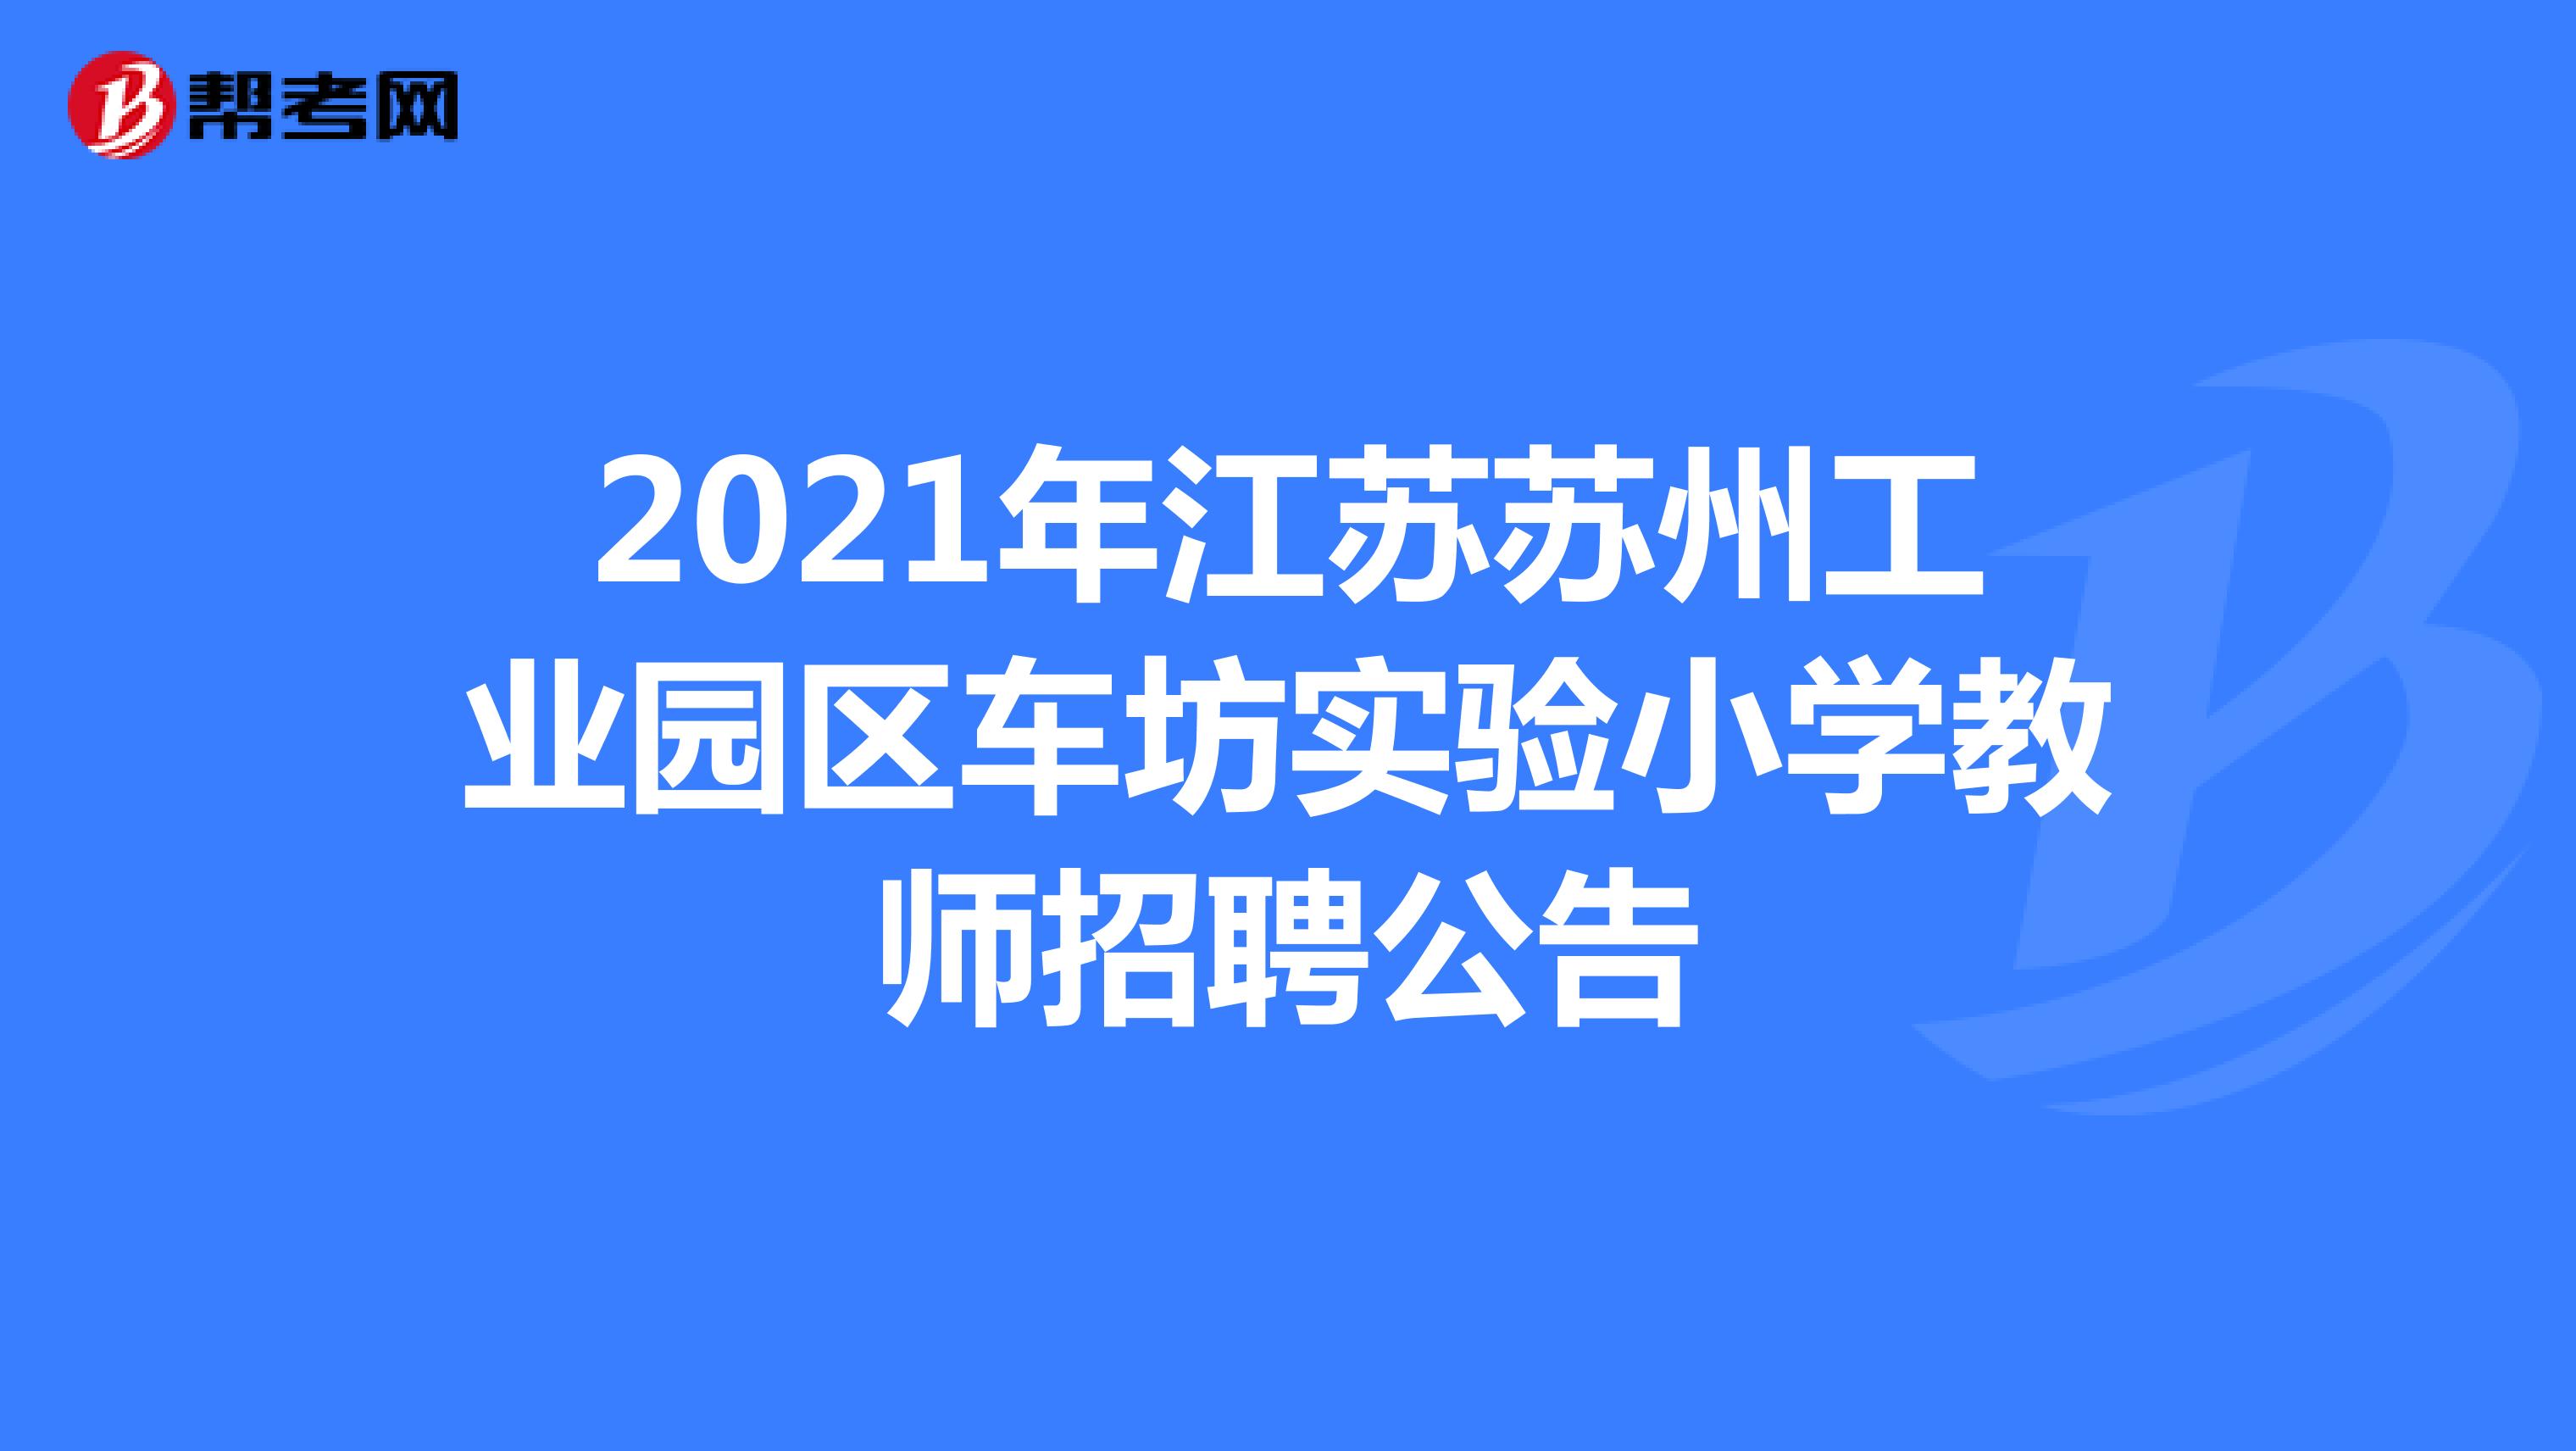 2021年江苏苏州工业园区车坊实验小学教师招聘公告